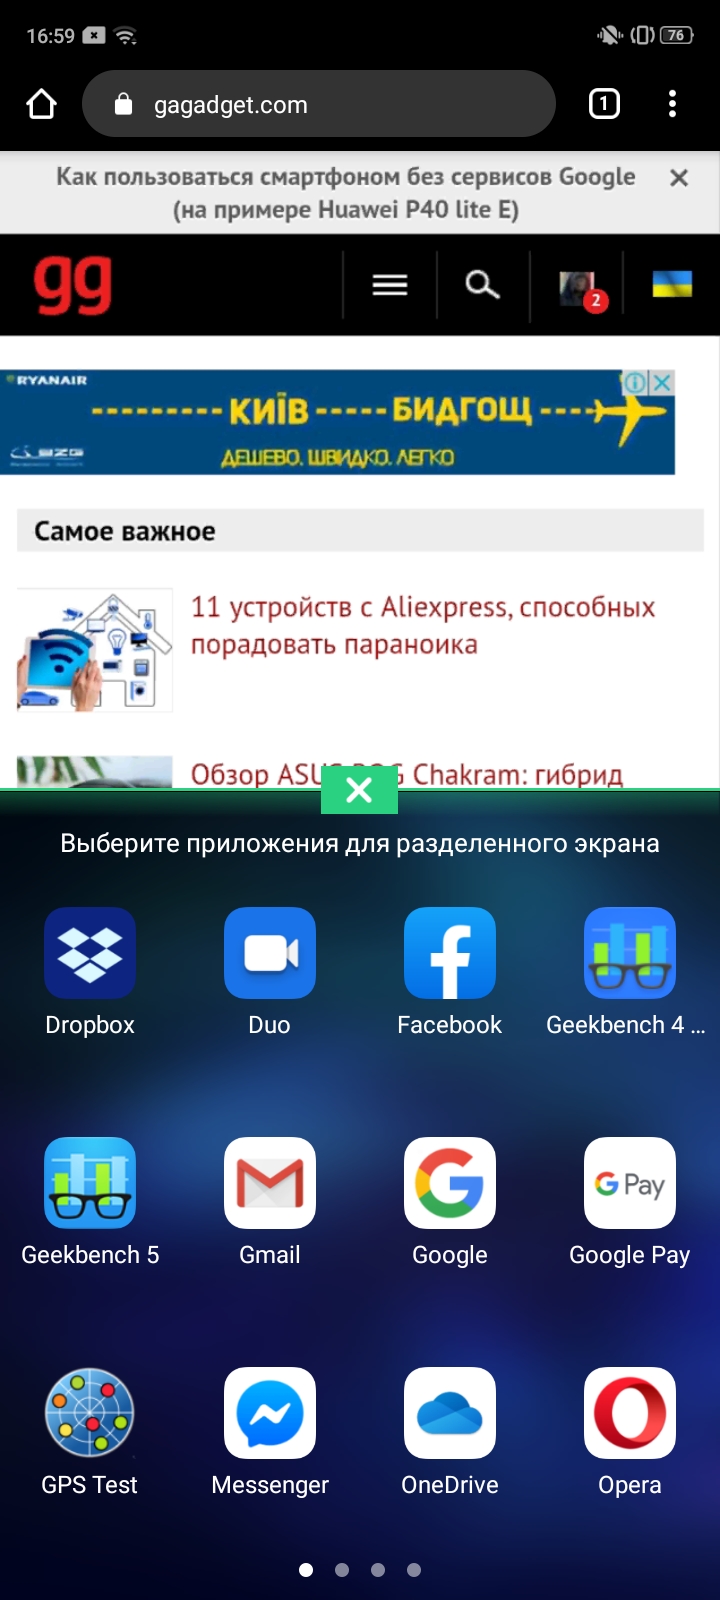 Обзор OPPO A31: бюджетный Android-смартфон с современным дизайном и тройной камерой-180